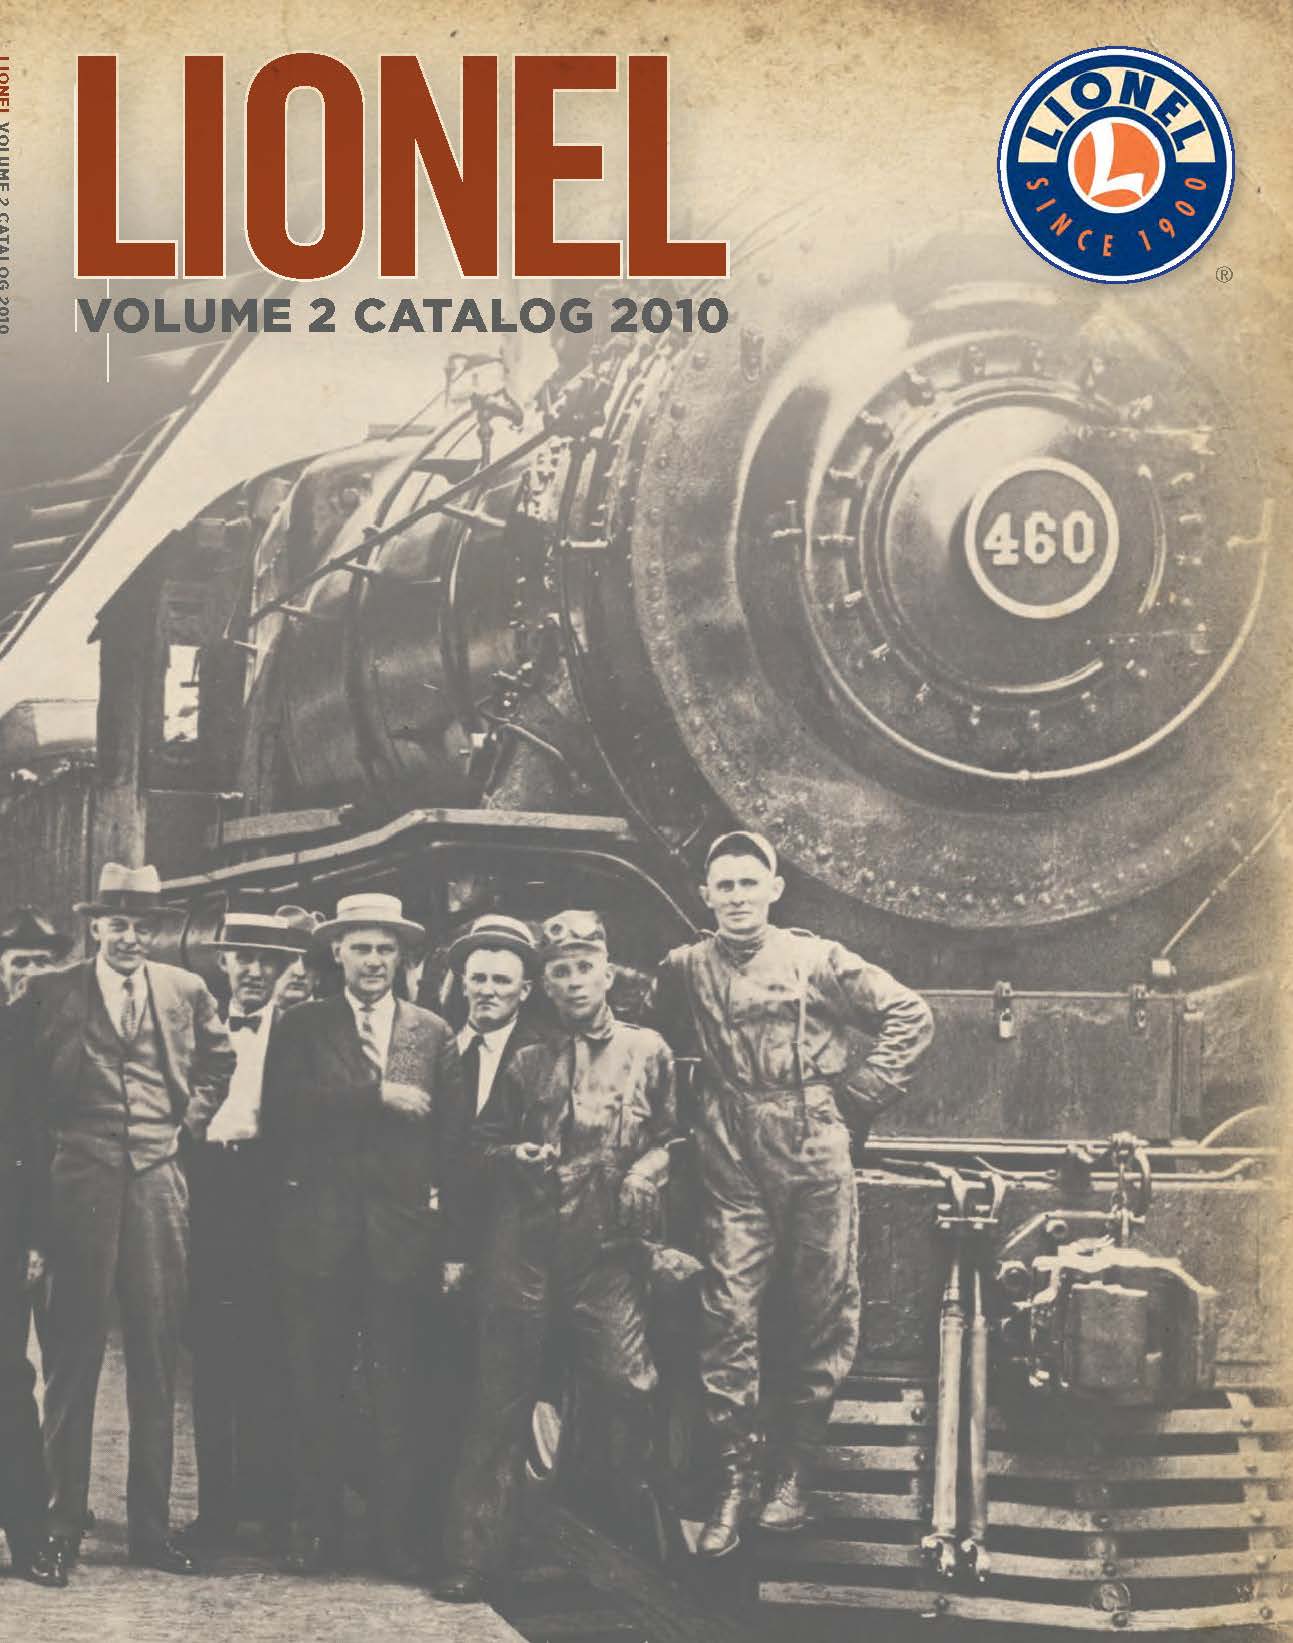 2010 Lionel Volume 2